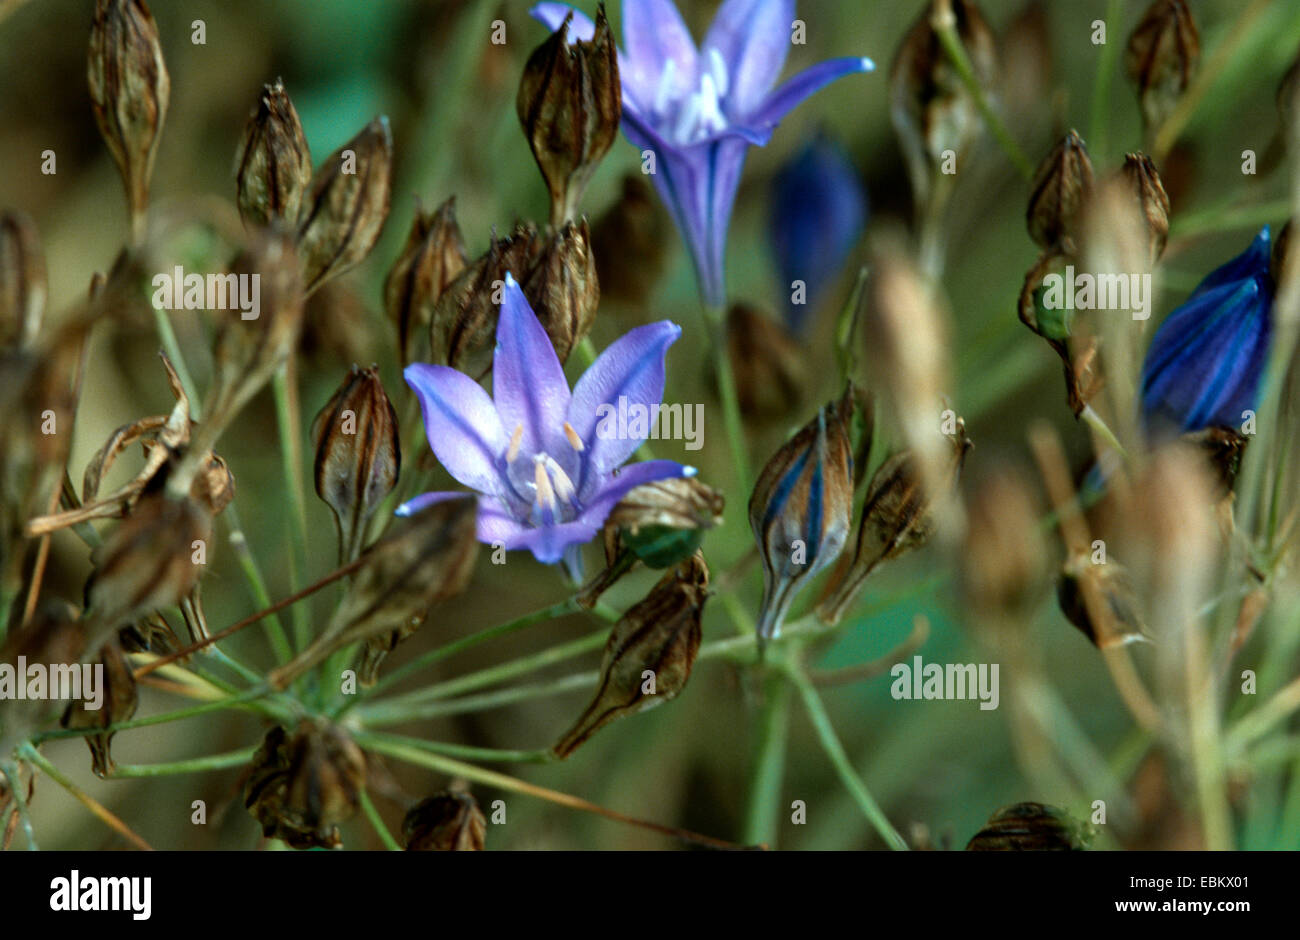 Grass-Nuss, Triplet Lilie, Starflower, Wild Hyazinthe (Triteleia Laxa, Brodiaea Laxa), Blume Stockfoto